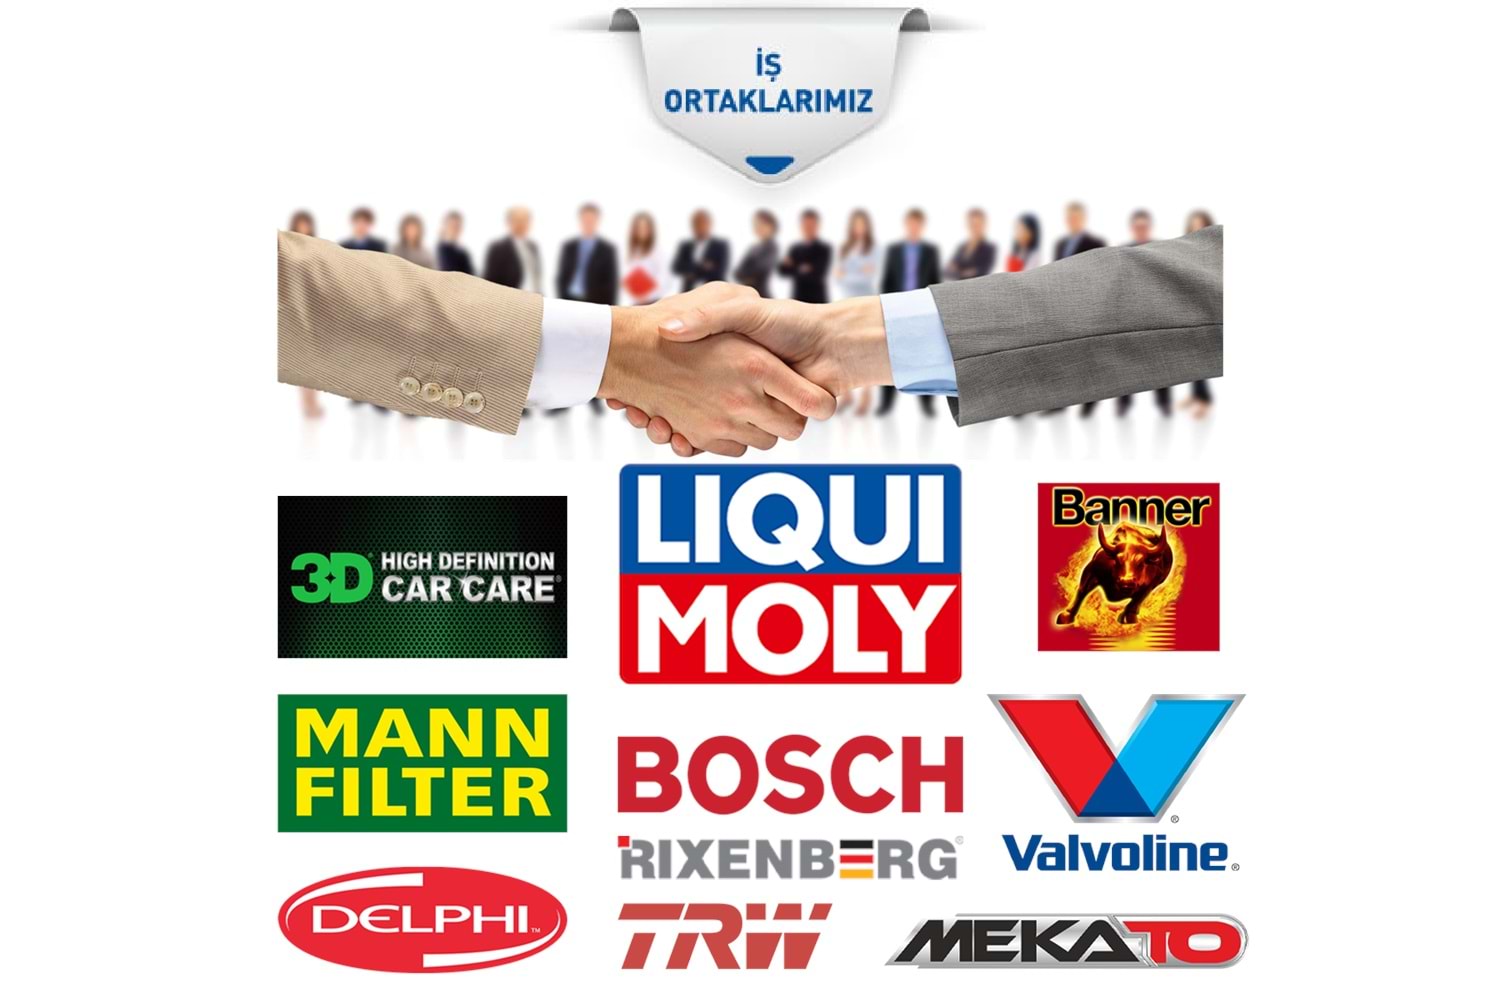 Bosch Fiat Linea (1.4) Lpg İridyum (2007-2017) Buji Takımı 4 Ad.